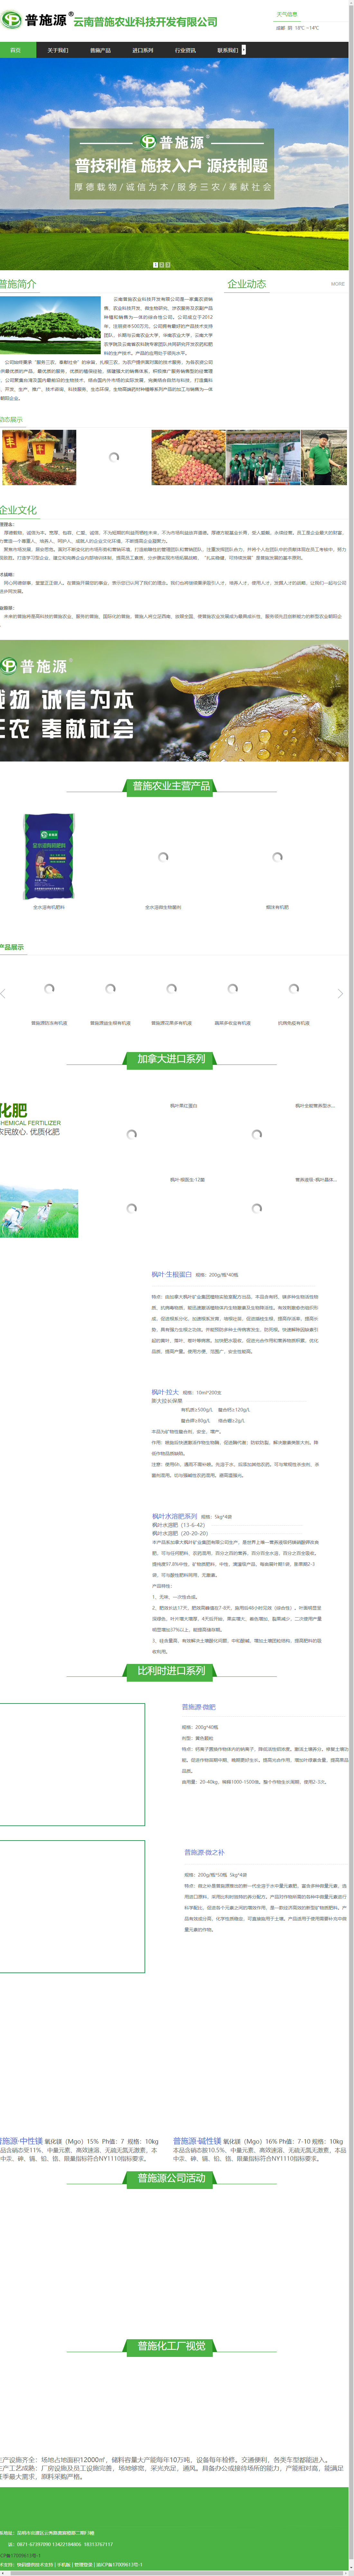 云南普施农业科技开发有限公司网站案例